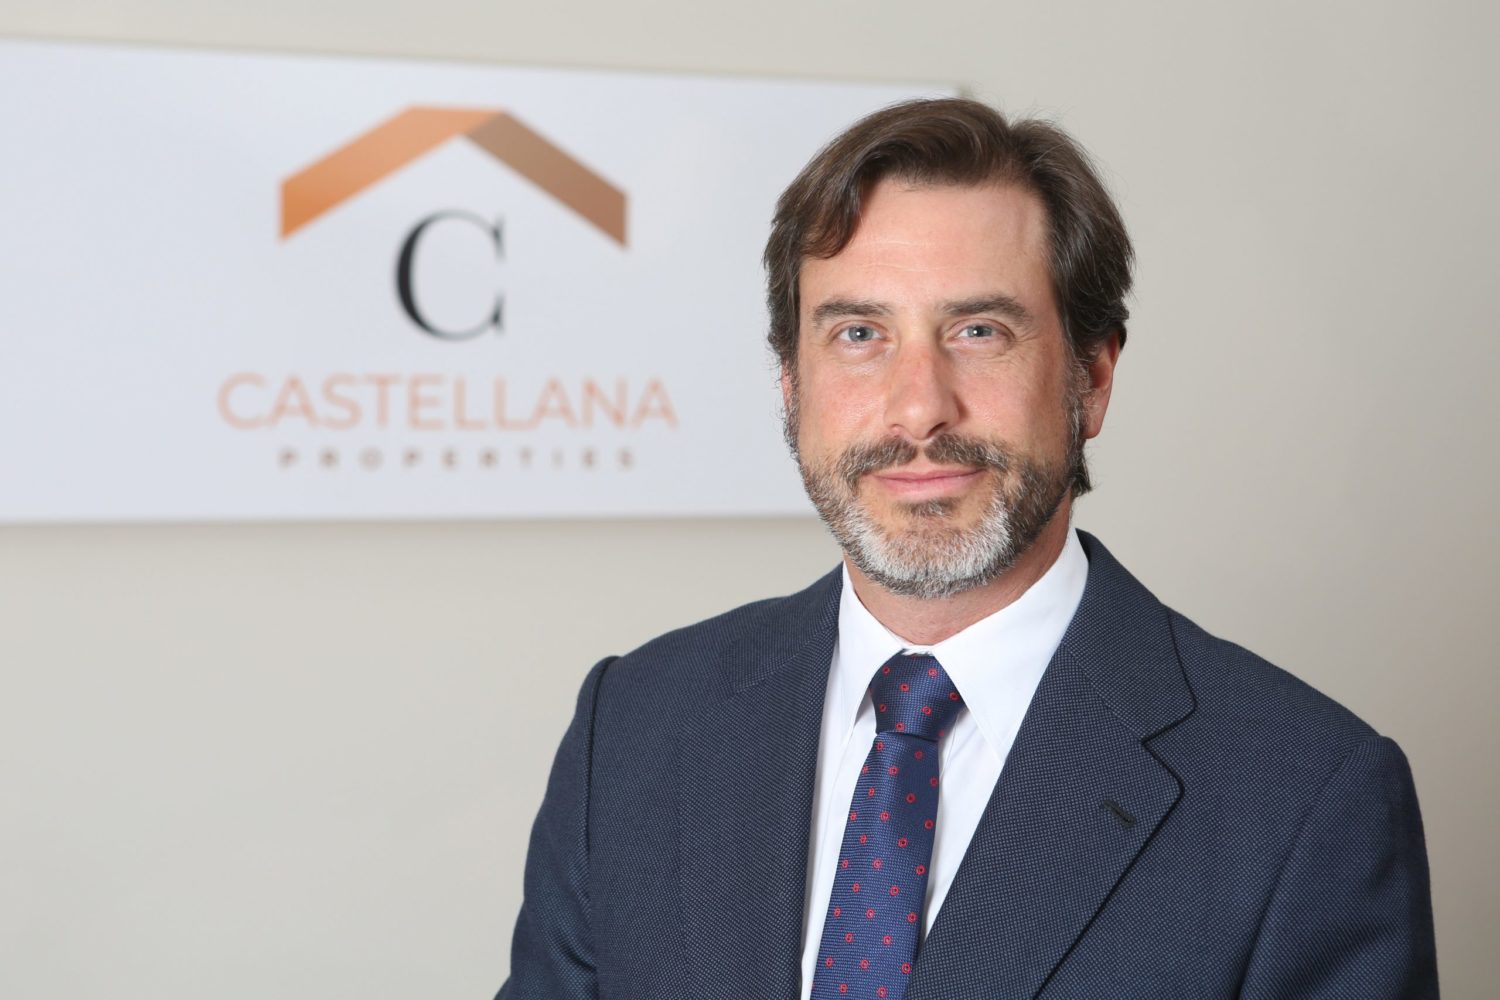 Castellana Properties reafirma su apuesta por la innovación con el desarrollo del programa iCast - Just Retail